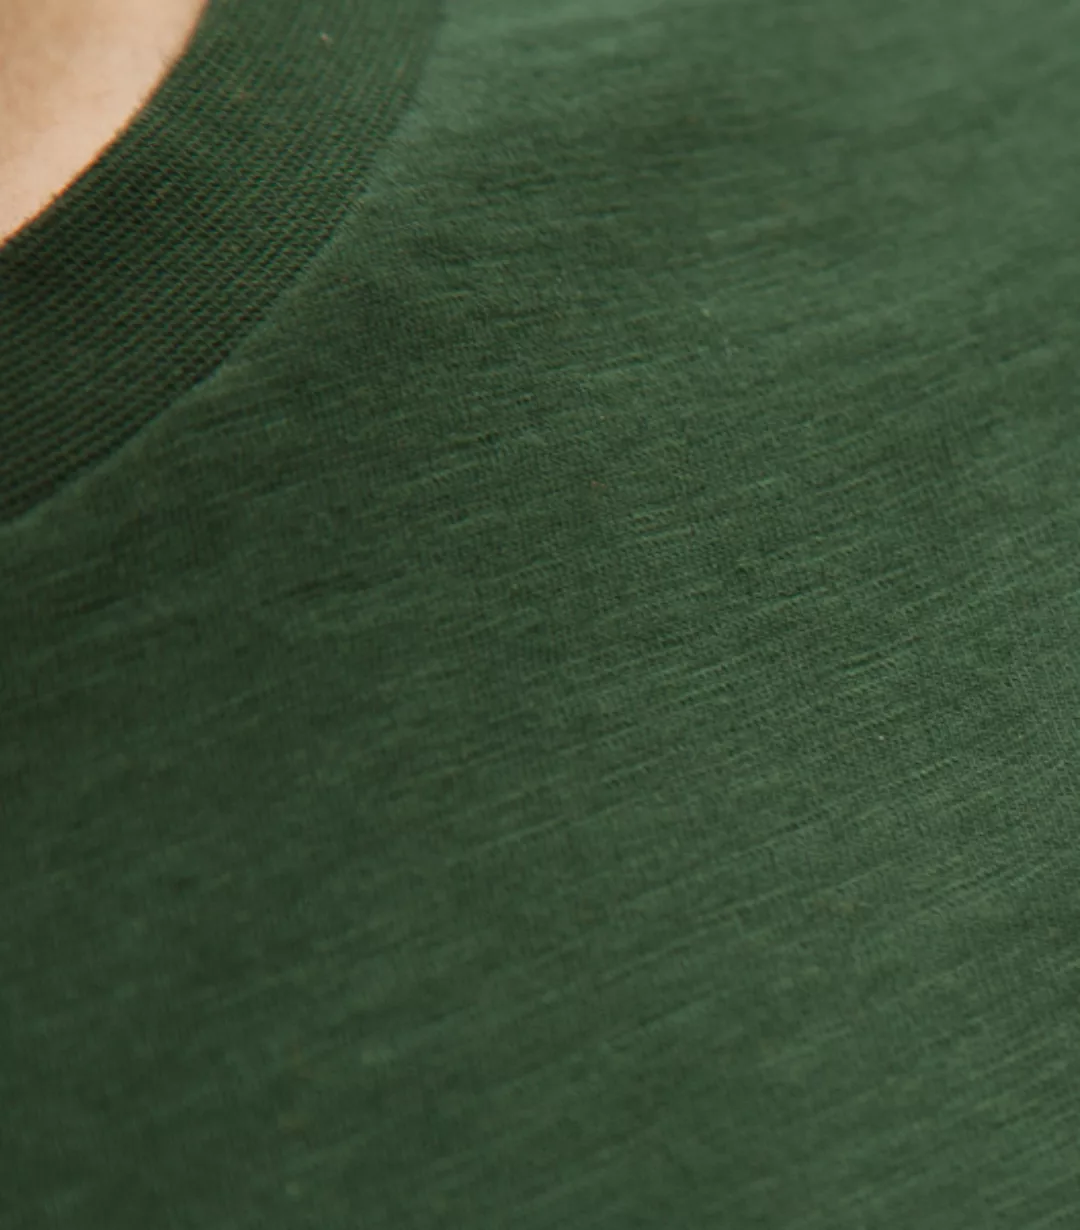 Basic / Blanko - Fair Gehandeltes Bio Männer T-shirt Slub günstig online kaufen